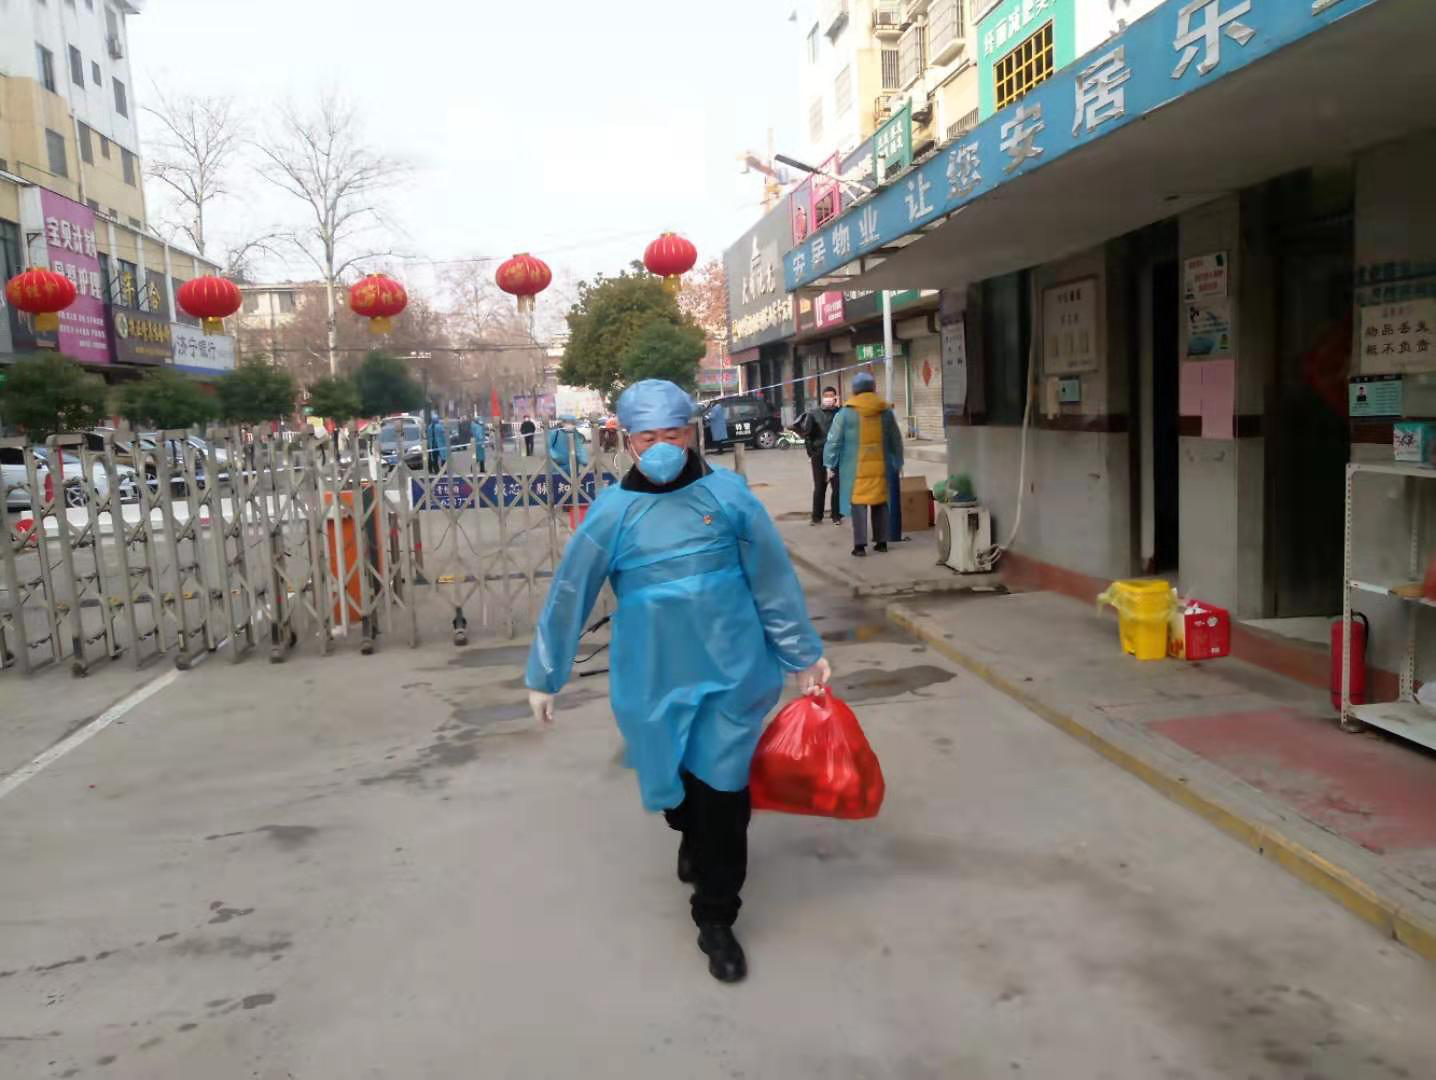 刘堪海同志帮助隔离小区居民传送物资